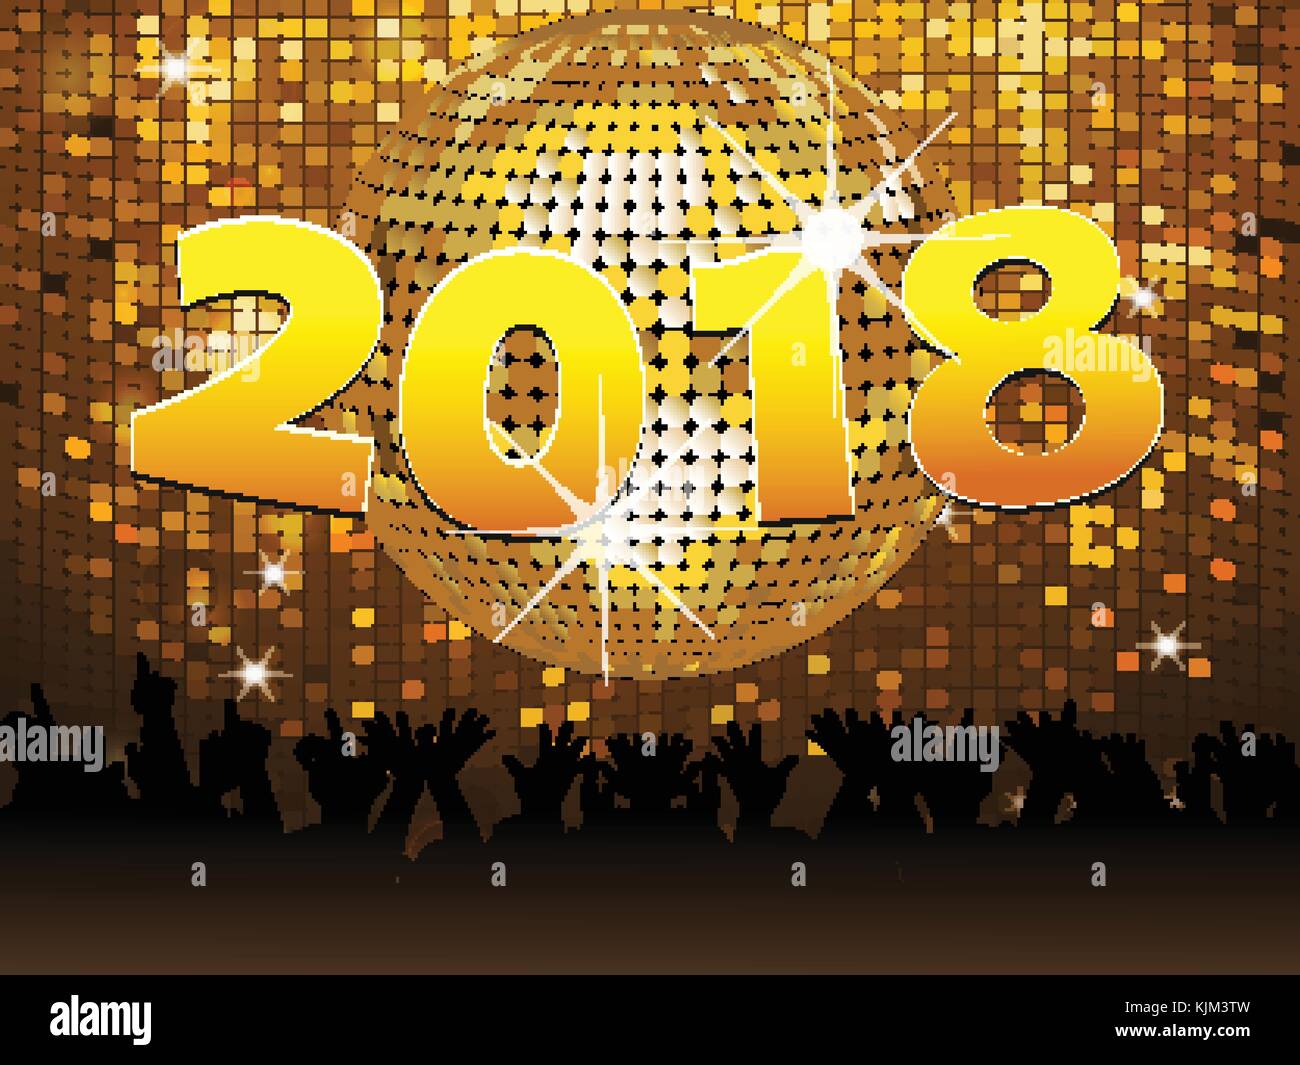 Vingt dix-huitième jour de l'an dans les numéros d'or plus de boule disco sur tuiles dorées mur avec foule Illustration de Vecteur